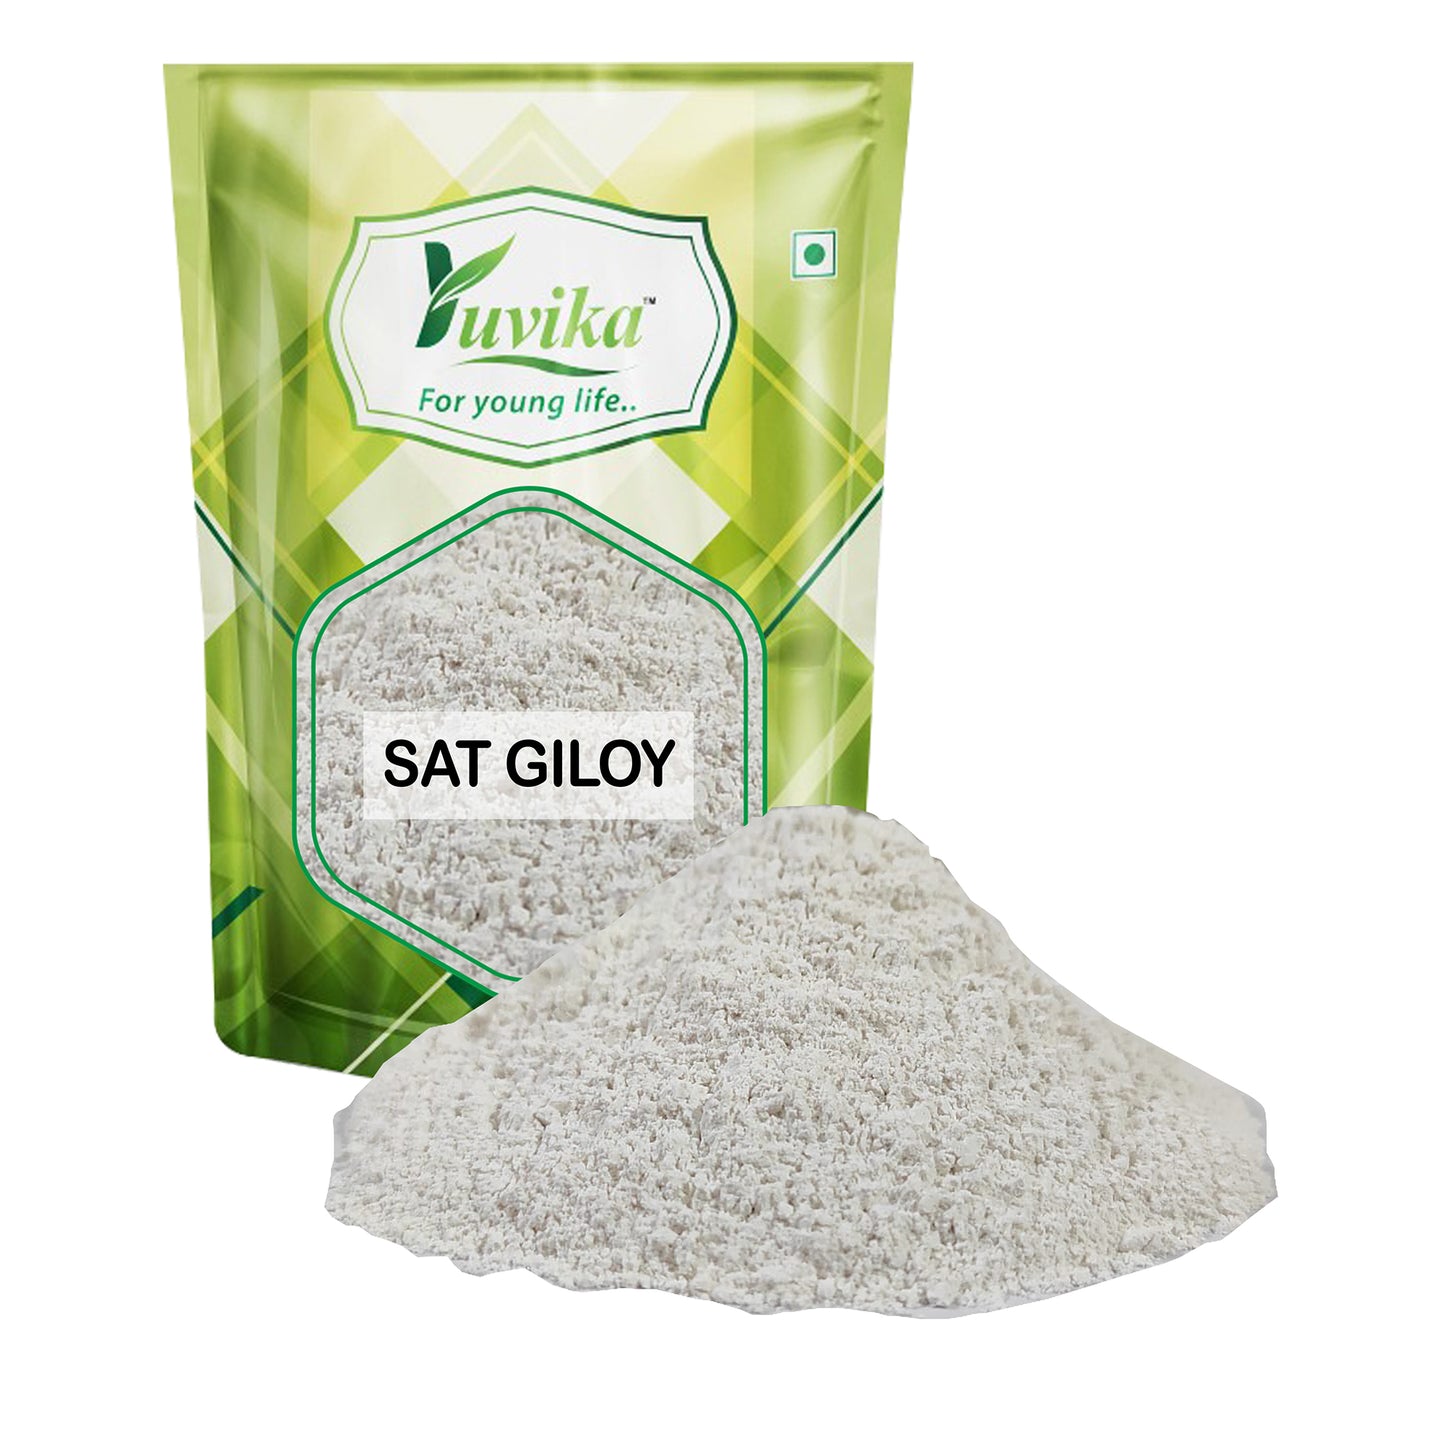 Sat Giloy - Sat Giloh - Satgiloy - Satgiloh - - Guduchi - Tinospora Cordifolia  - Giloy Extract